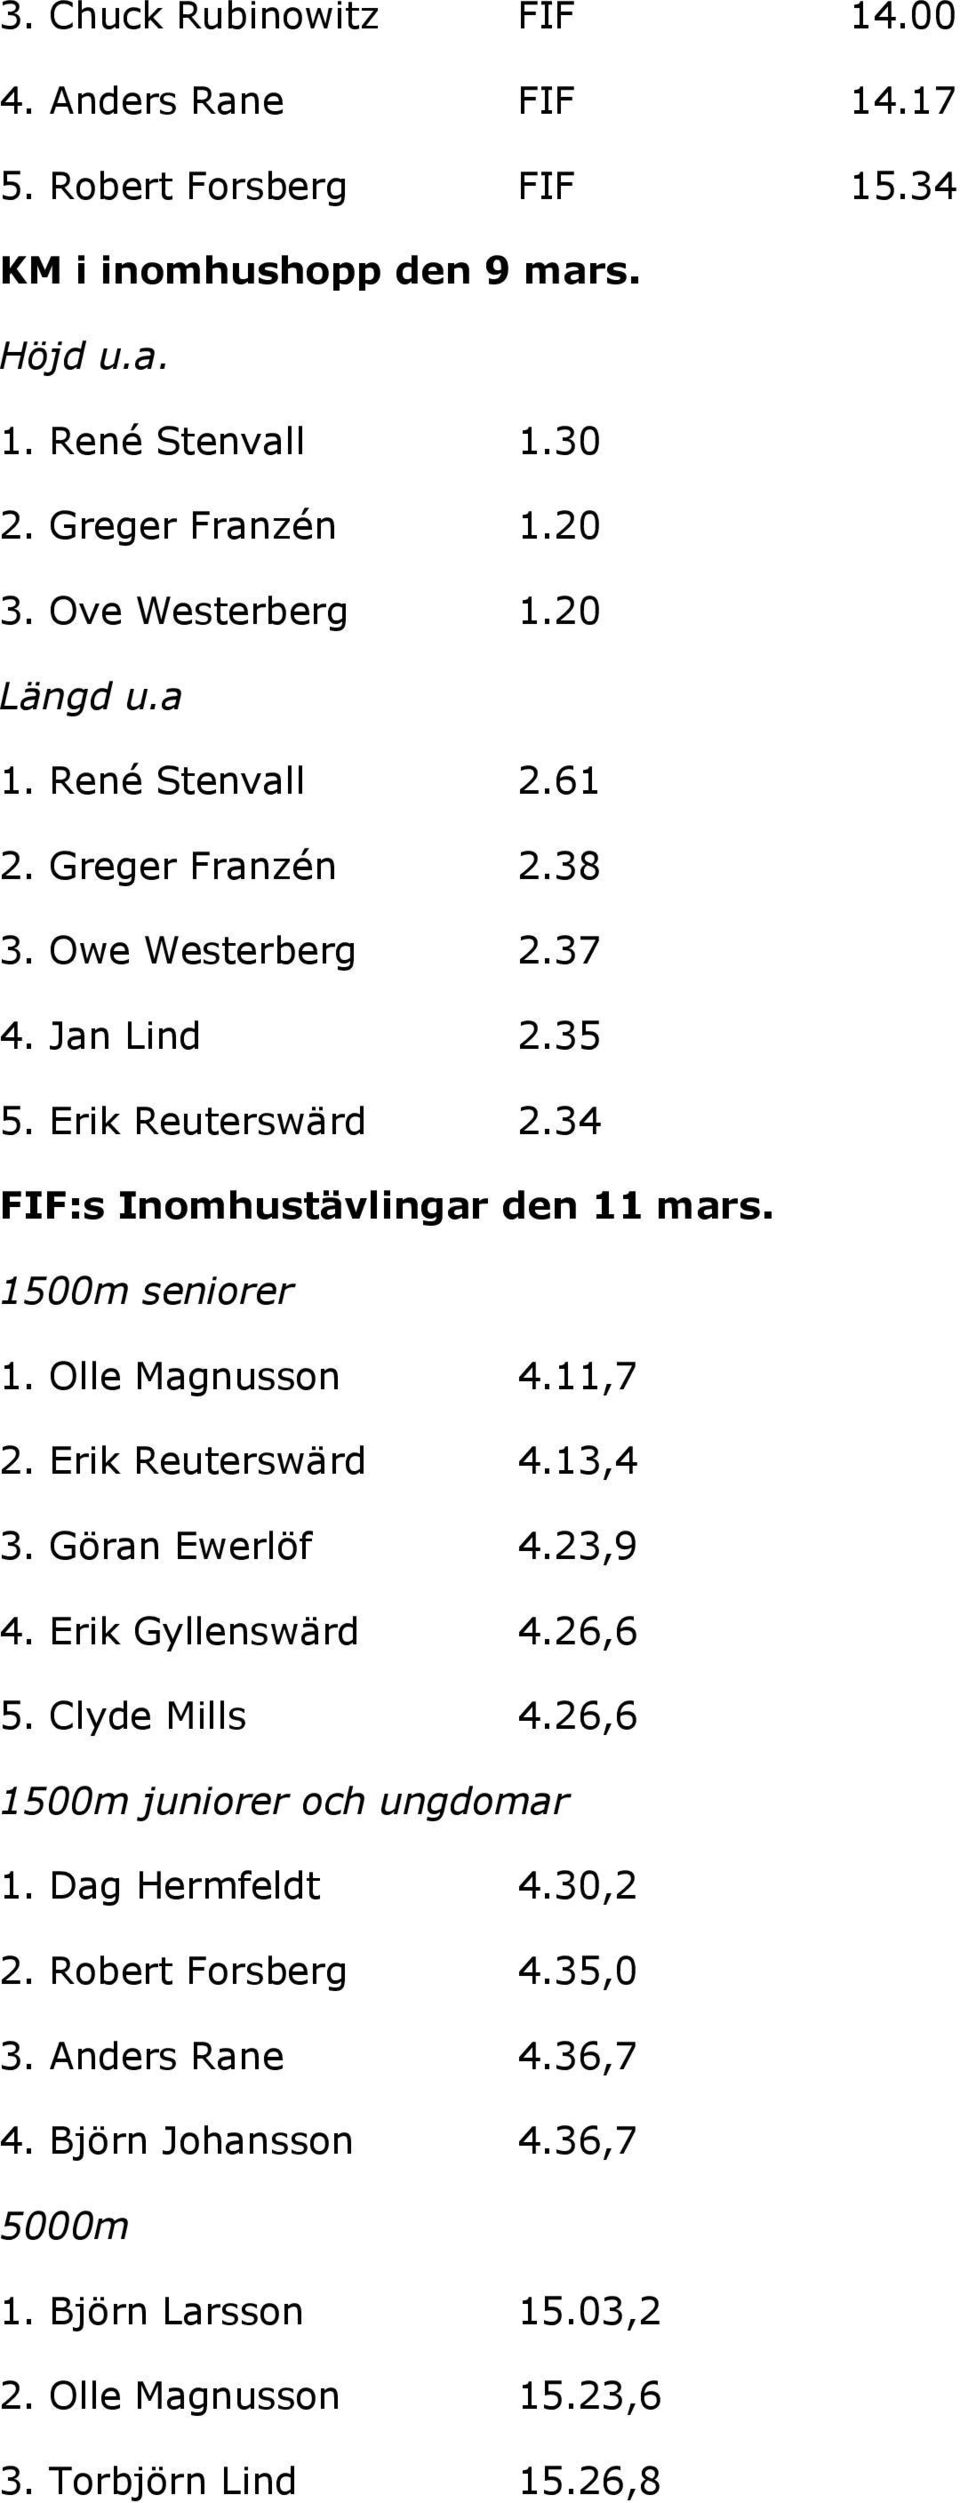 34 FIF:s Inomhustävlingar den 11 mars. 1500m seniorer 1. Olle Magnusson 4.11,7 2. Erik Reuterswärd 4.13,4 3. Göran Ewerlöf 4.23,9 4. Erik Gyllenswärd 4.26,6 5. Clyde Mills 4.